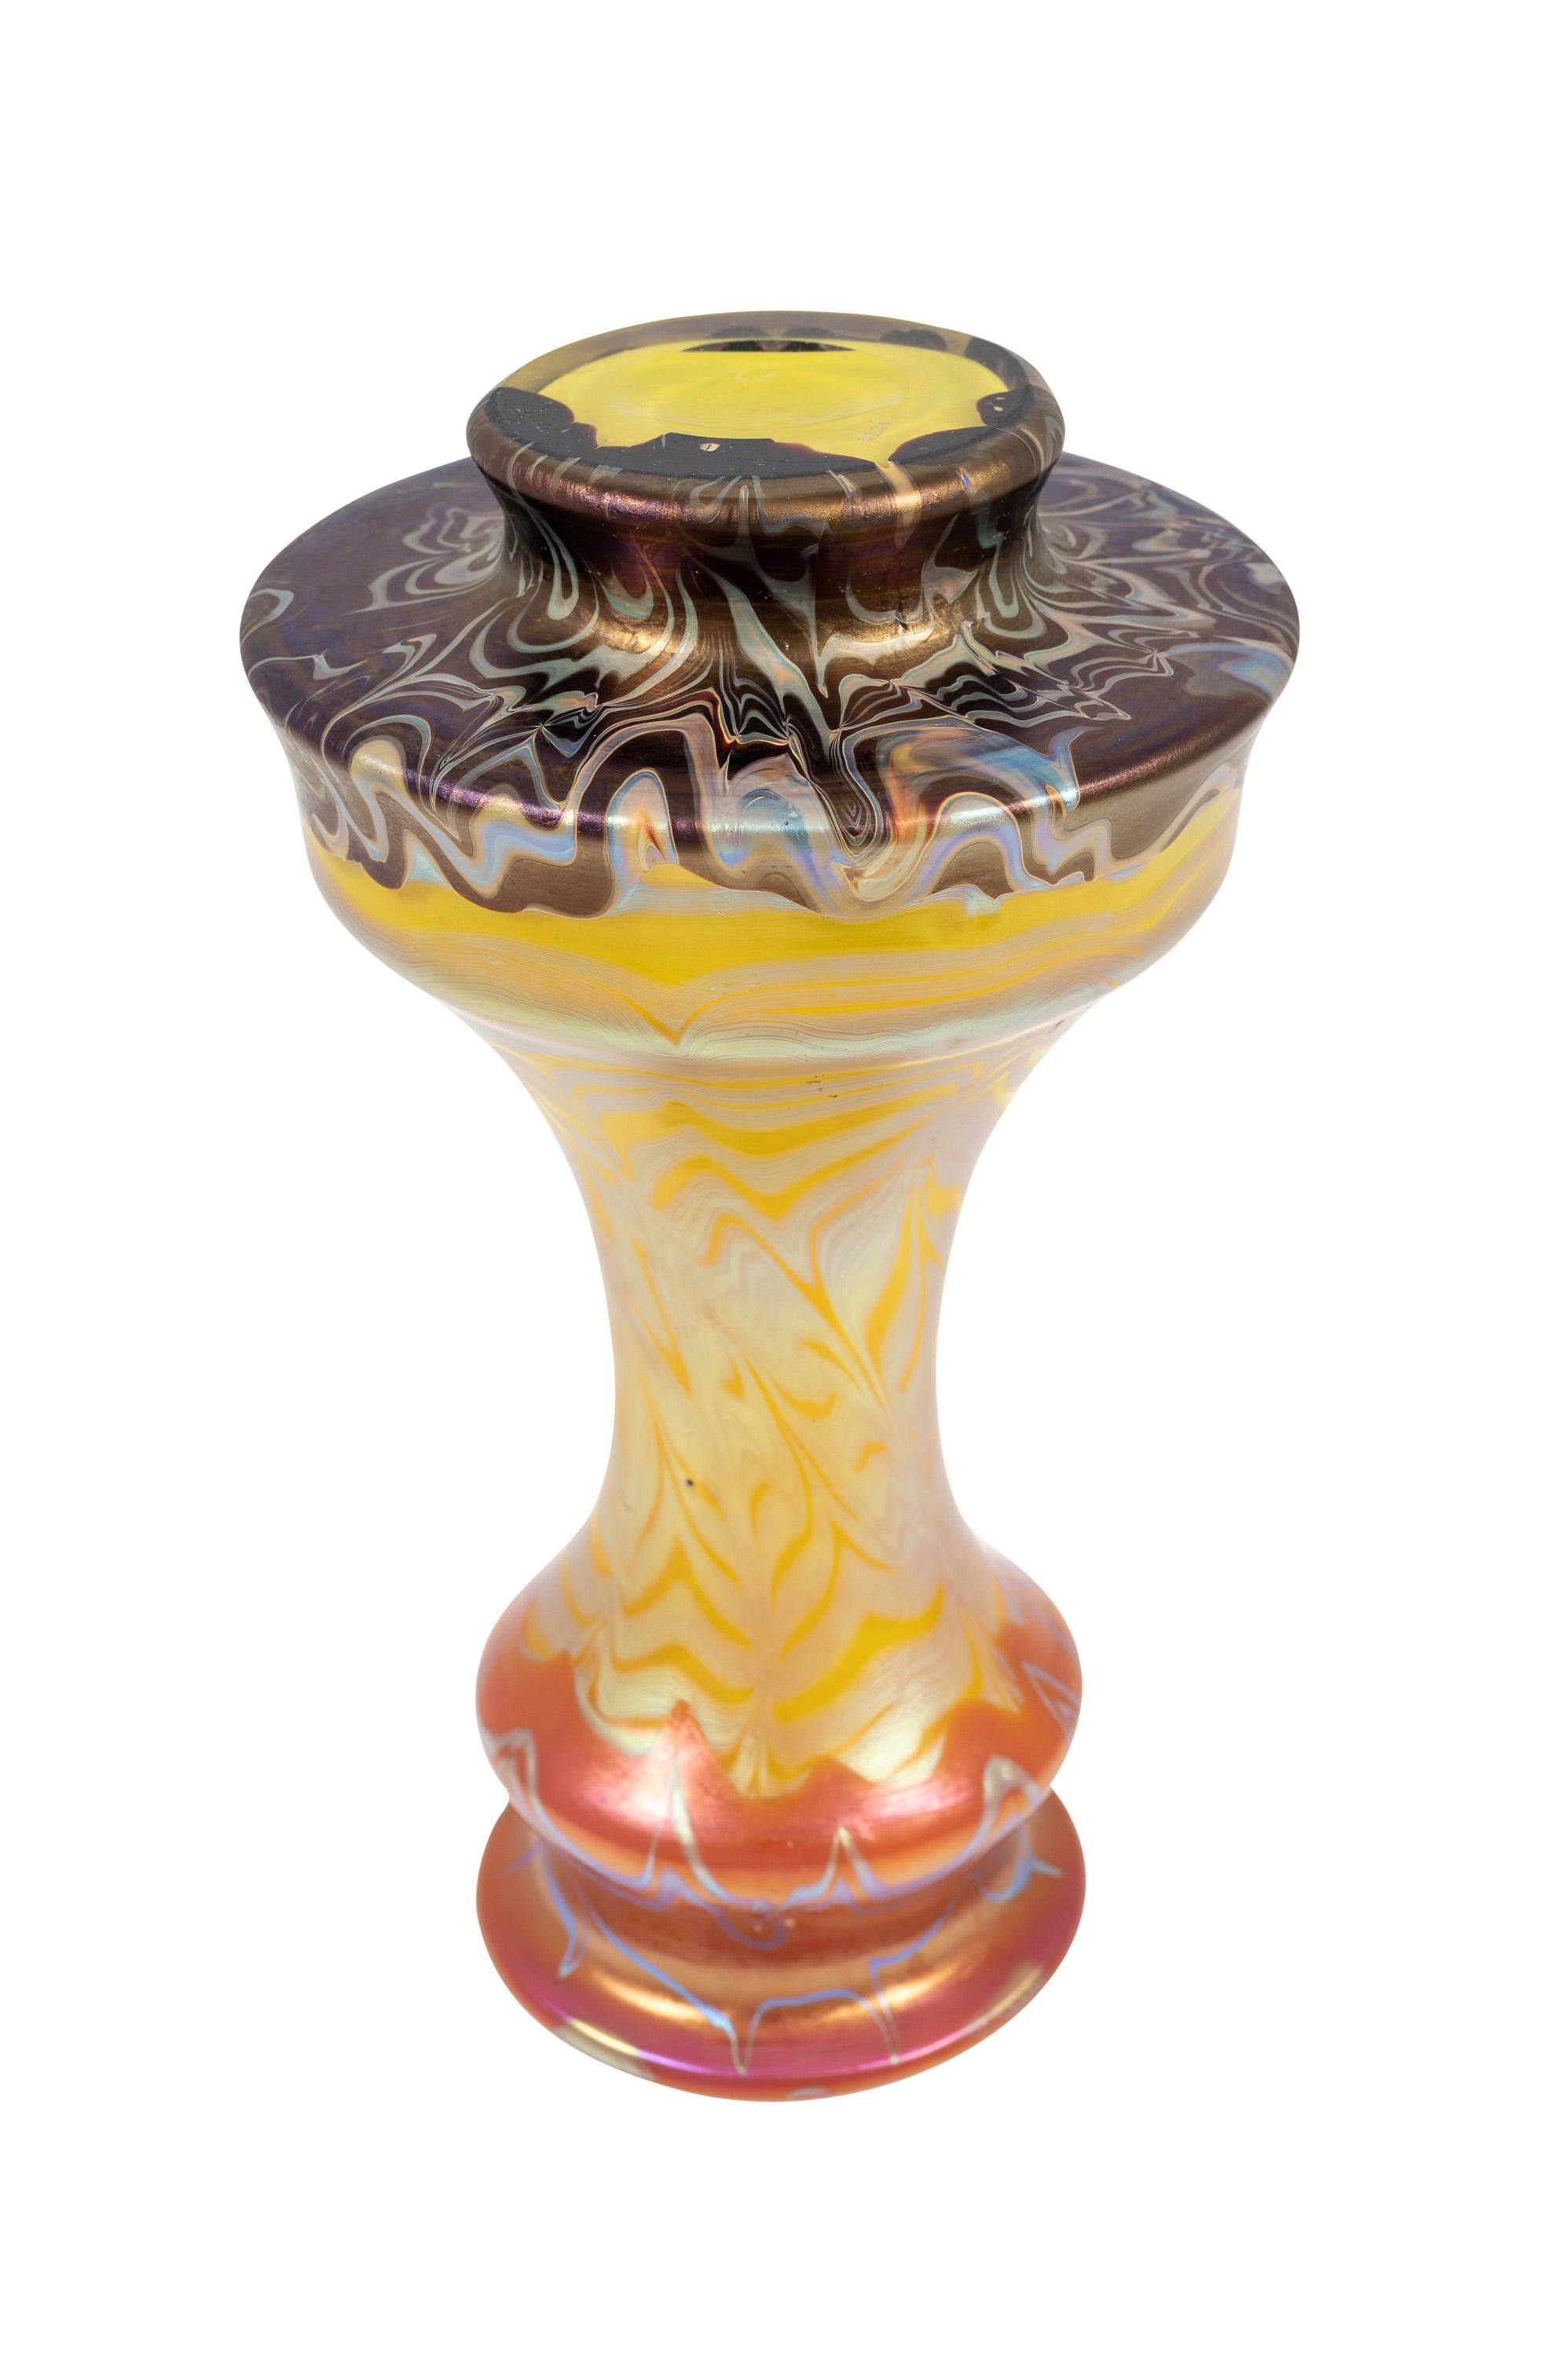 20th Century Bohemian Glass Vase Loetz PG 358 circa 1900 Art Nouveau For Sale